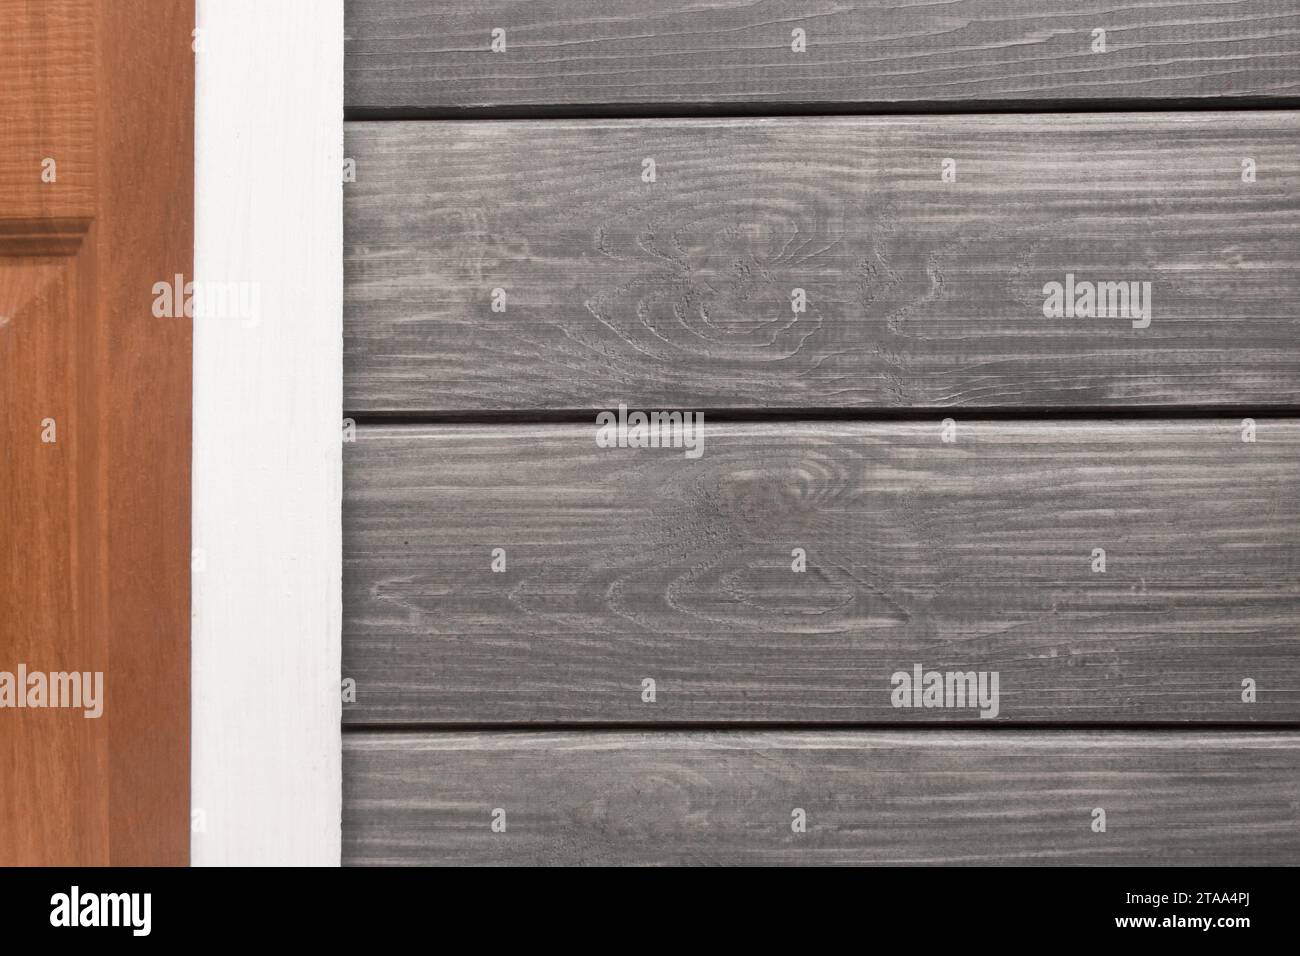 Innenelement weiße Trennwand, Teil der Wand mit grauen Holzbrettern, Strukturlinien, horizontale und vertikale Details, Diele grau. Stockfoto